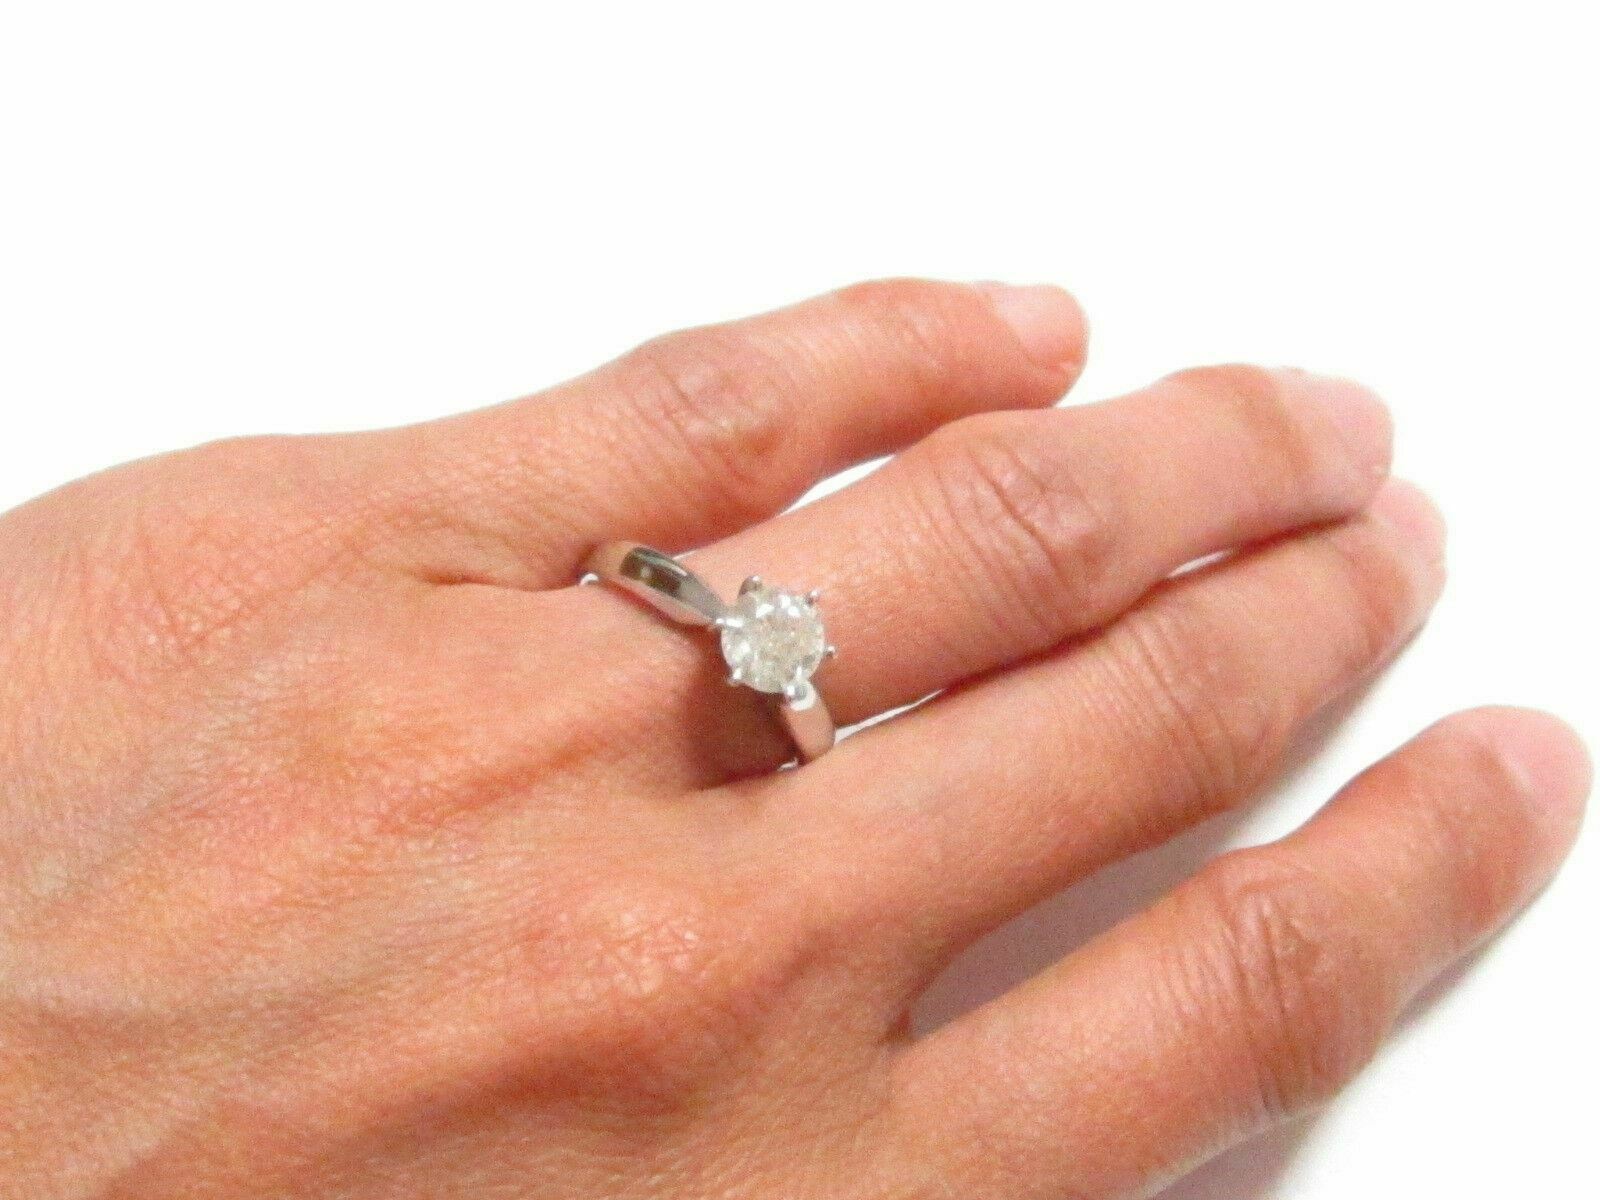 FINE SOLITAIRE Engagement Diamond Ring Designer Setting W/ APPRAISAL CERT